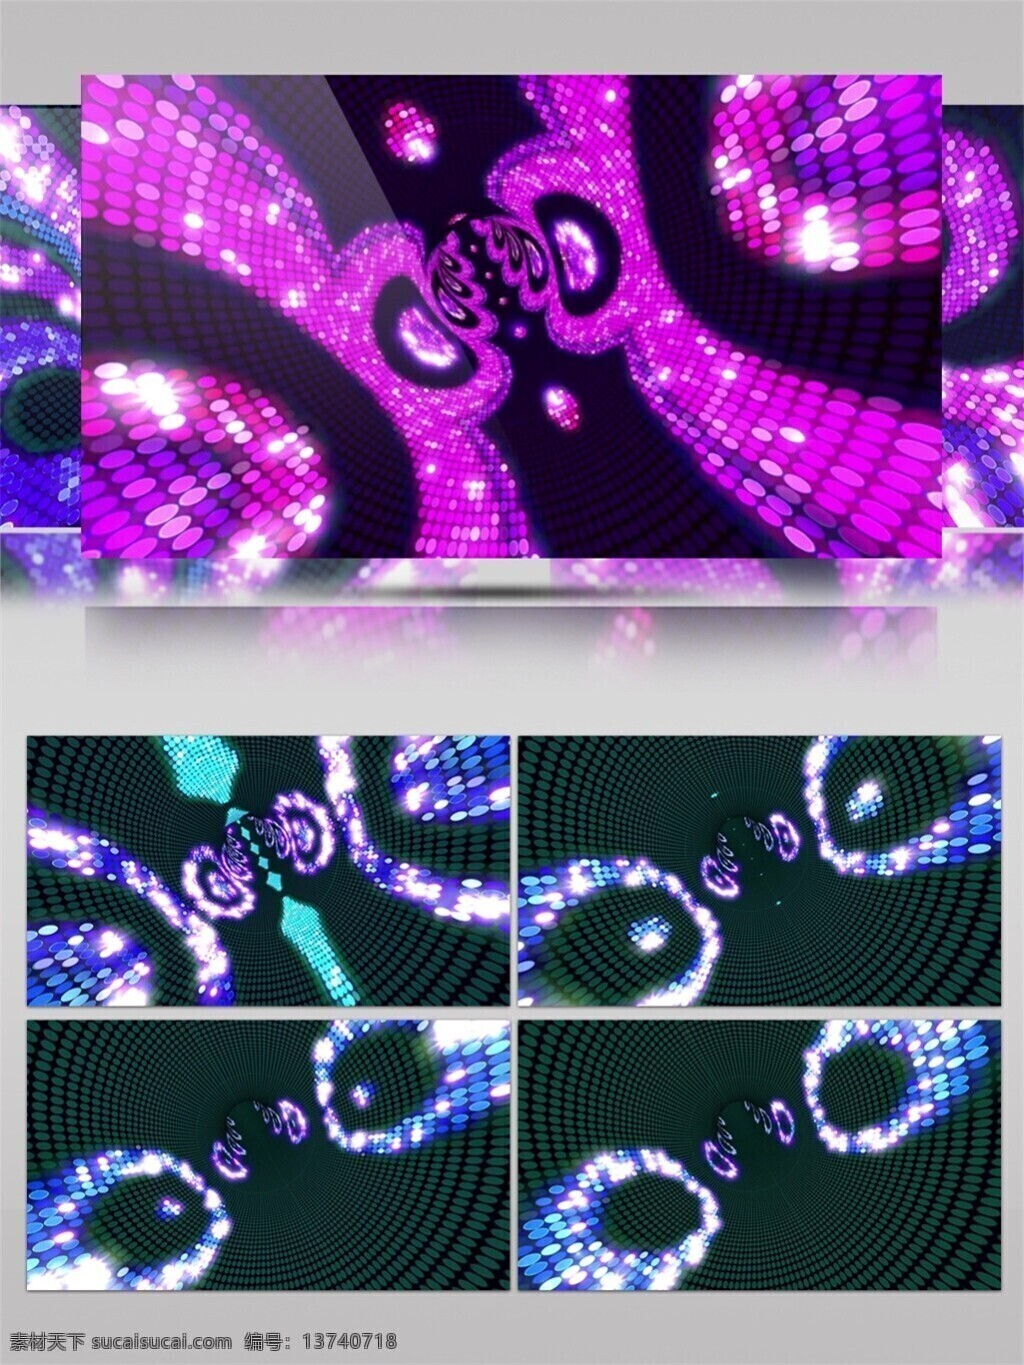 紫光 脉冲 泡沫 动态 视频 星际 紫色 光束 视觉享受 唯美背景素材 节目灯光